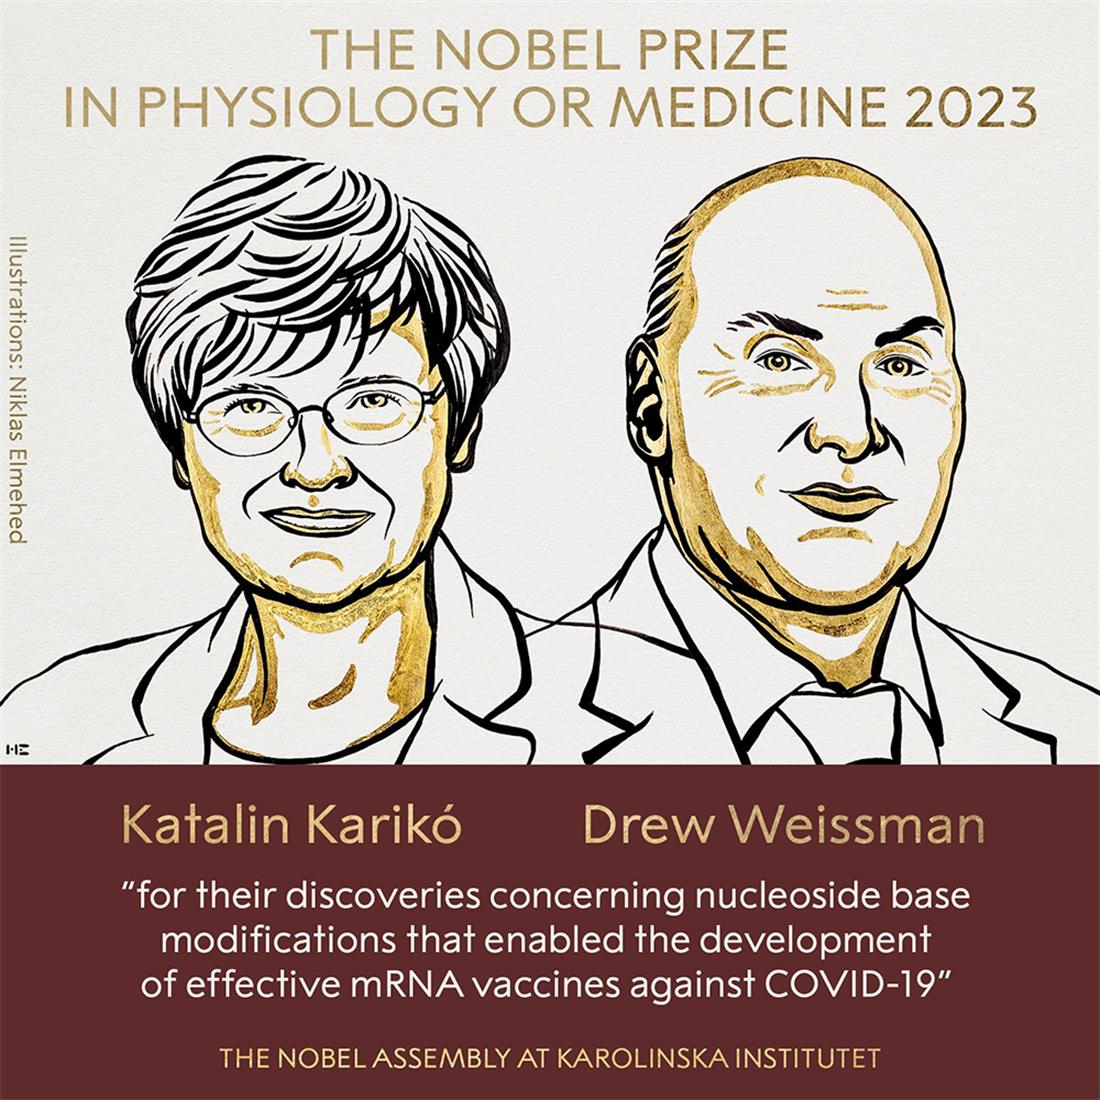 Καταλίν Κάρικο - Ντρου Γουάισμαν  - βραβείο Νόμπελ Ιατρικής